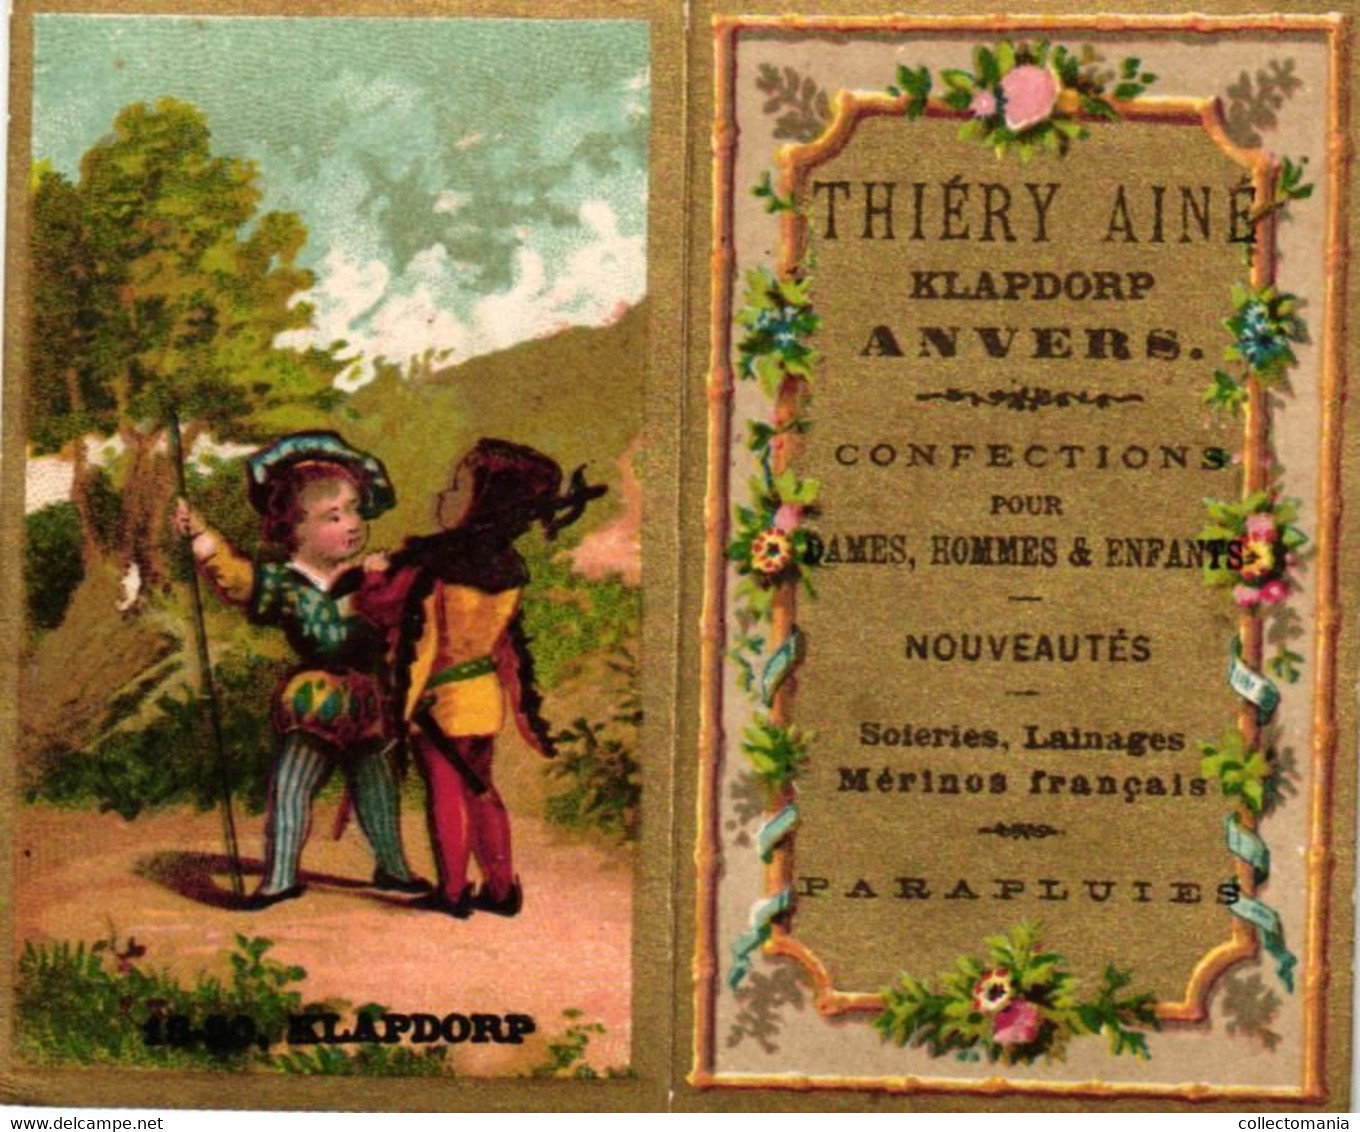 1 Calendrier  1882   Confections Nouveautés  Thiéry Ainé  Anvers Klapdorp - Small : ...-1900